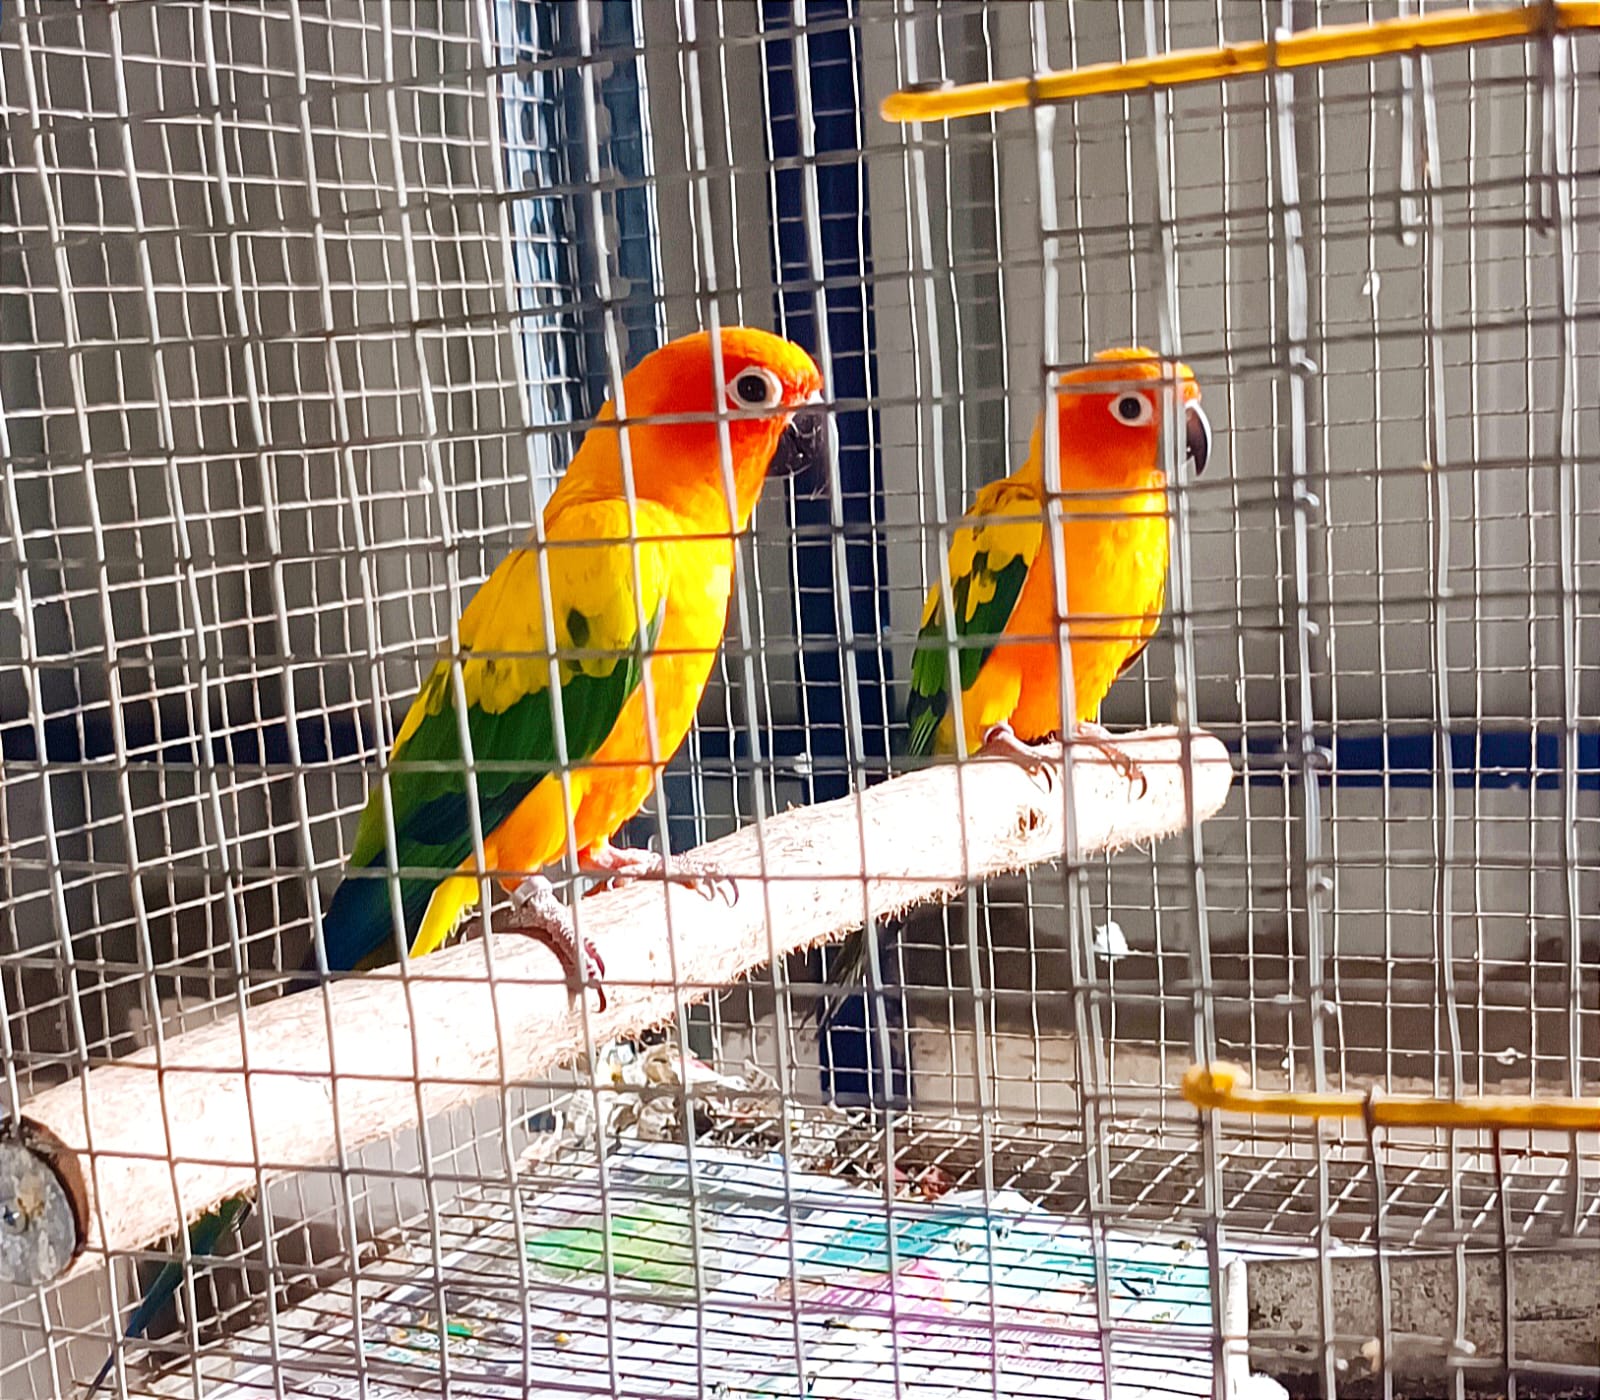 colourful healthy sun conure birds pair